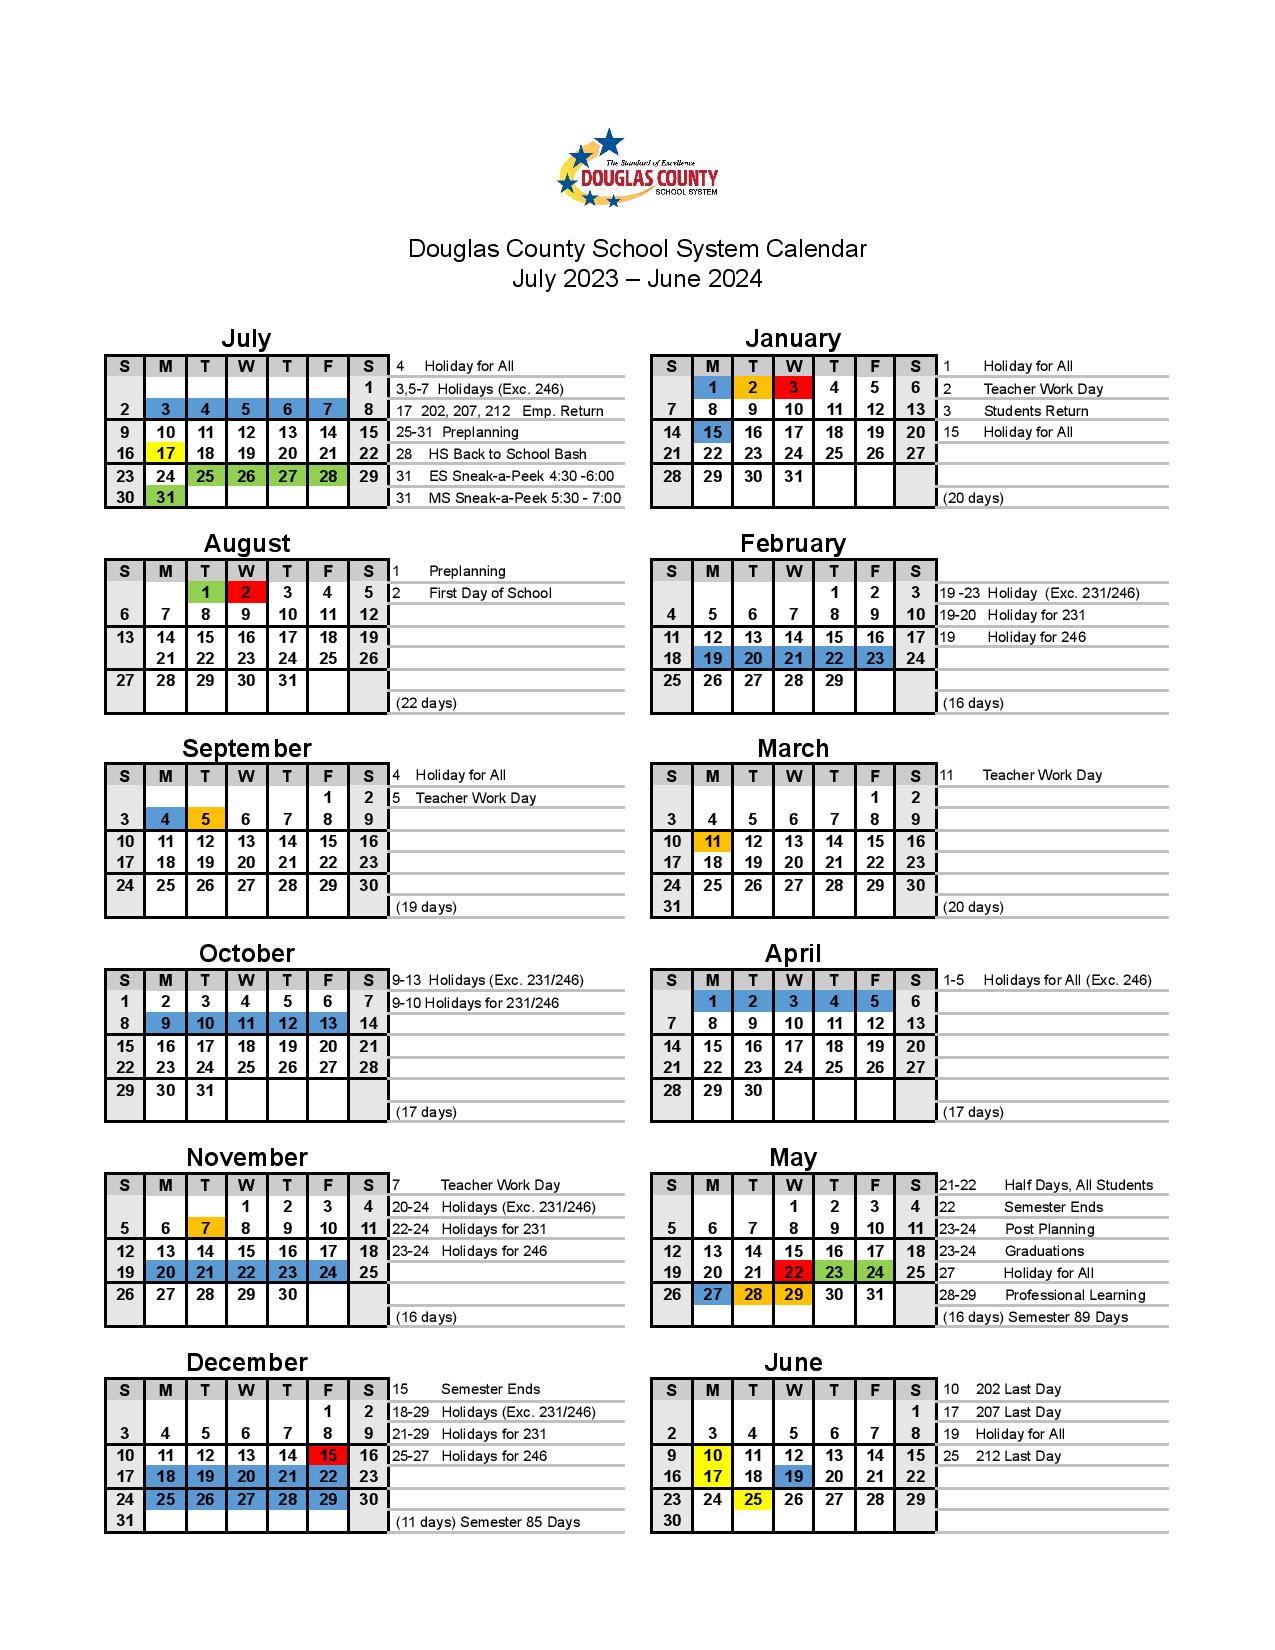 Douglas County Schools Calendar 20232024 in PDF